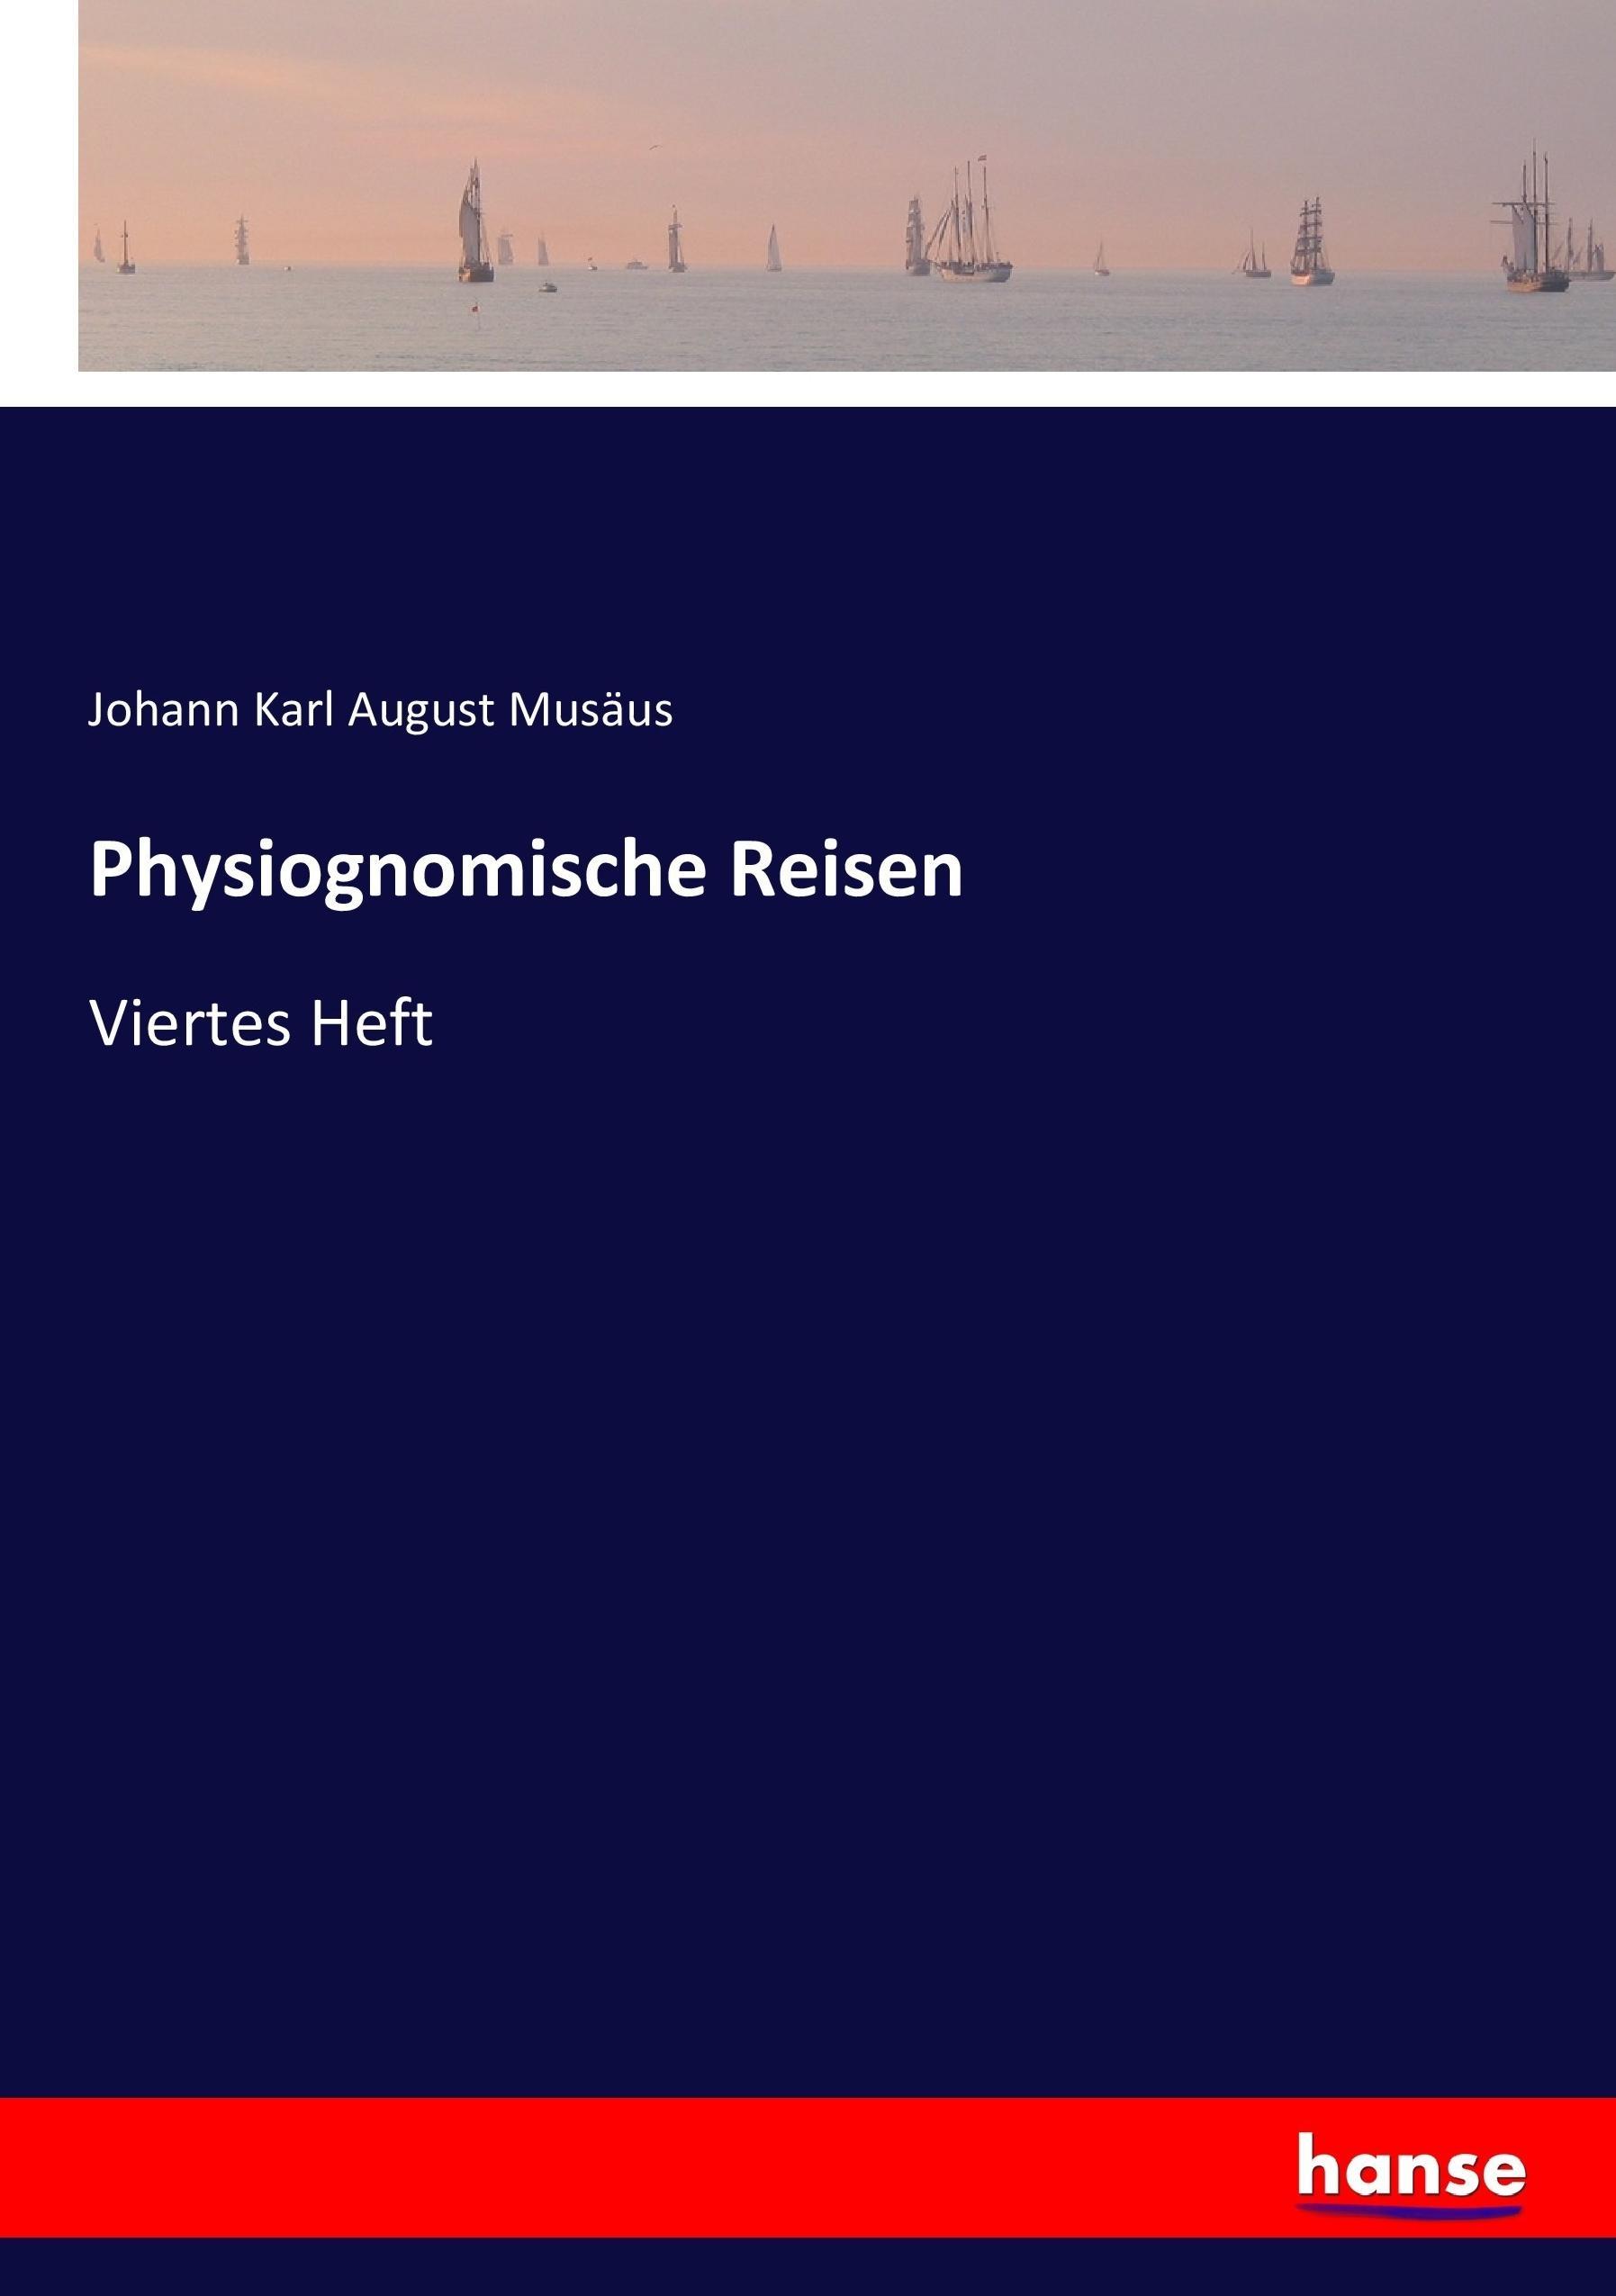 Physiognomische Reisen | Viertes Heft | Johann Karl August Musäus | Taschenbuch | Paperback | 324 S. | Deutsch | 2017 | hansebooks | EAN 9783744699488 - Musäus, Johann Karl August